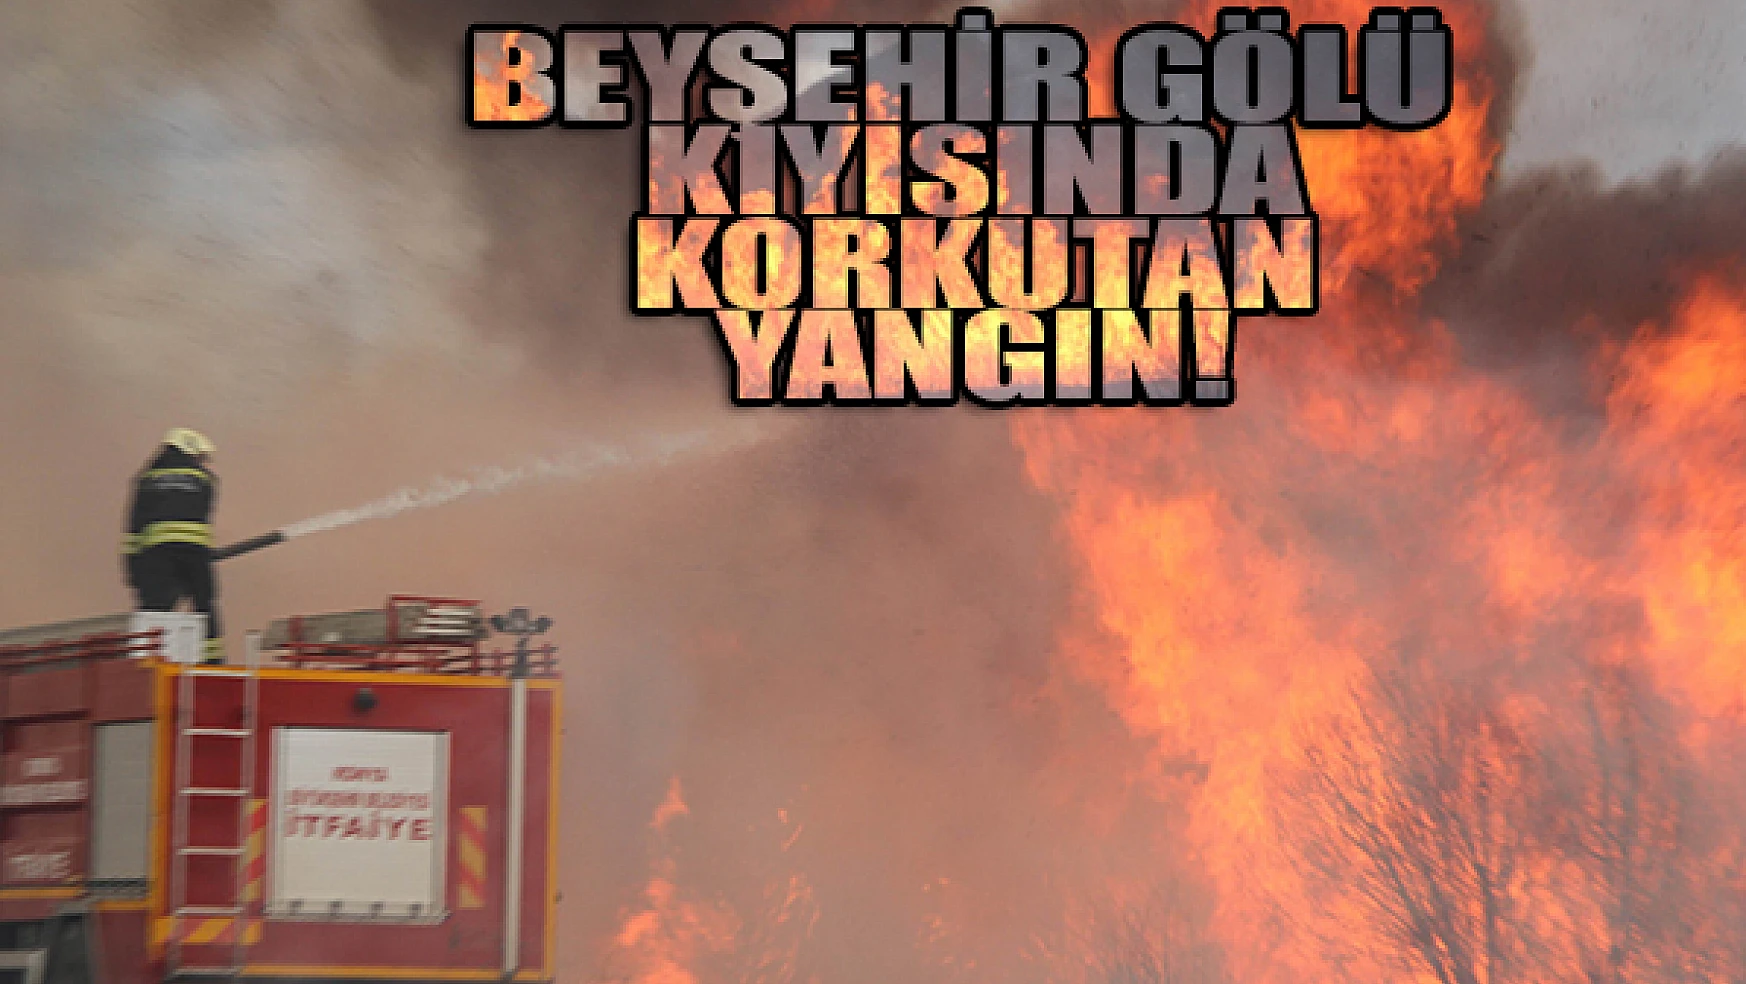 Beyşehir Gölü kıyısında korkutan yangın!